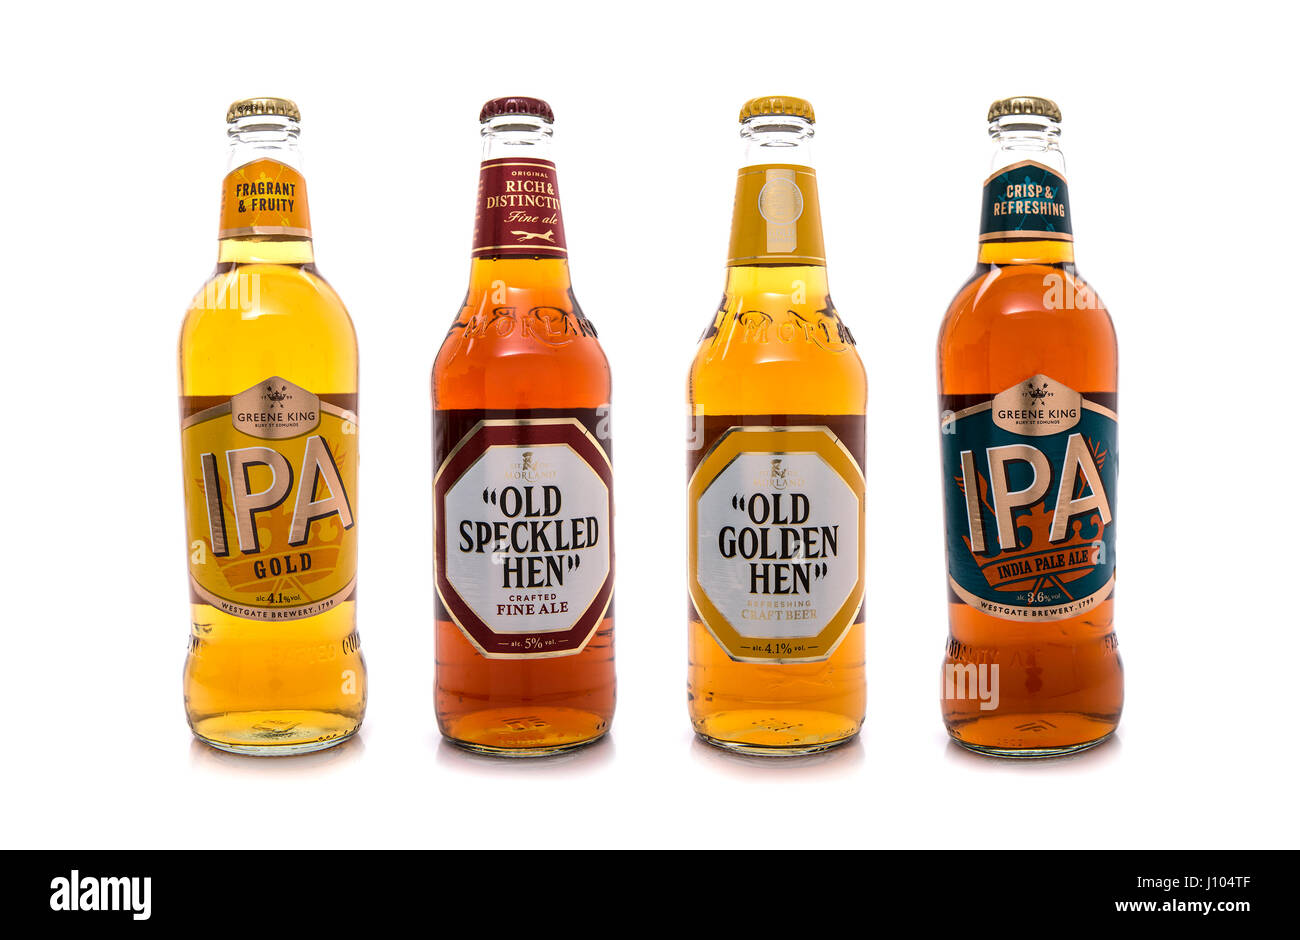 SWINDON, REINO UNIDO - Abril 06, 2017: Jefe de selección de cervezas cerveza Greene King, cuatro botellas de los mejores cervezas inglesas recogido a mano por el jefe cervecera. Foto de stock